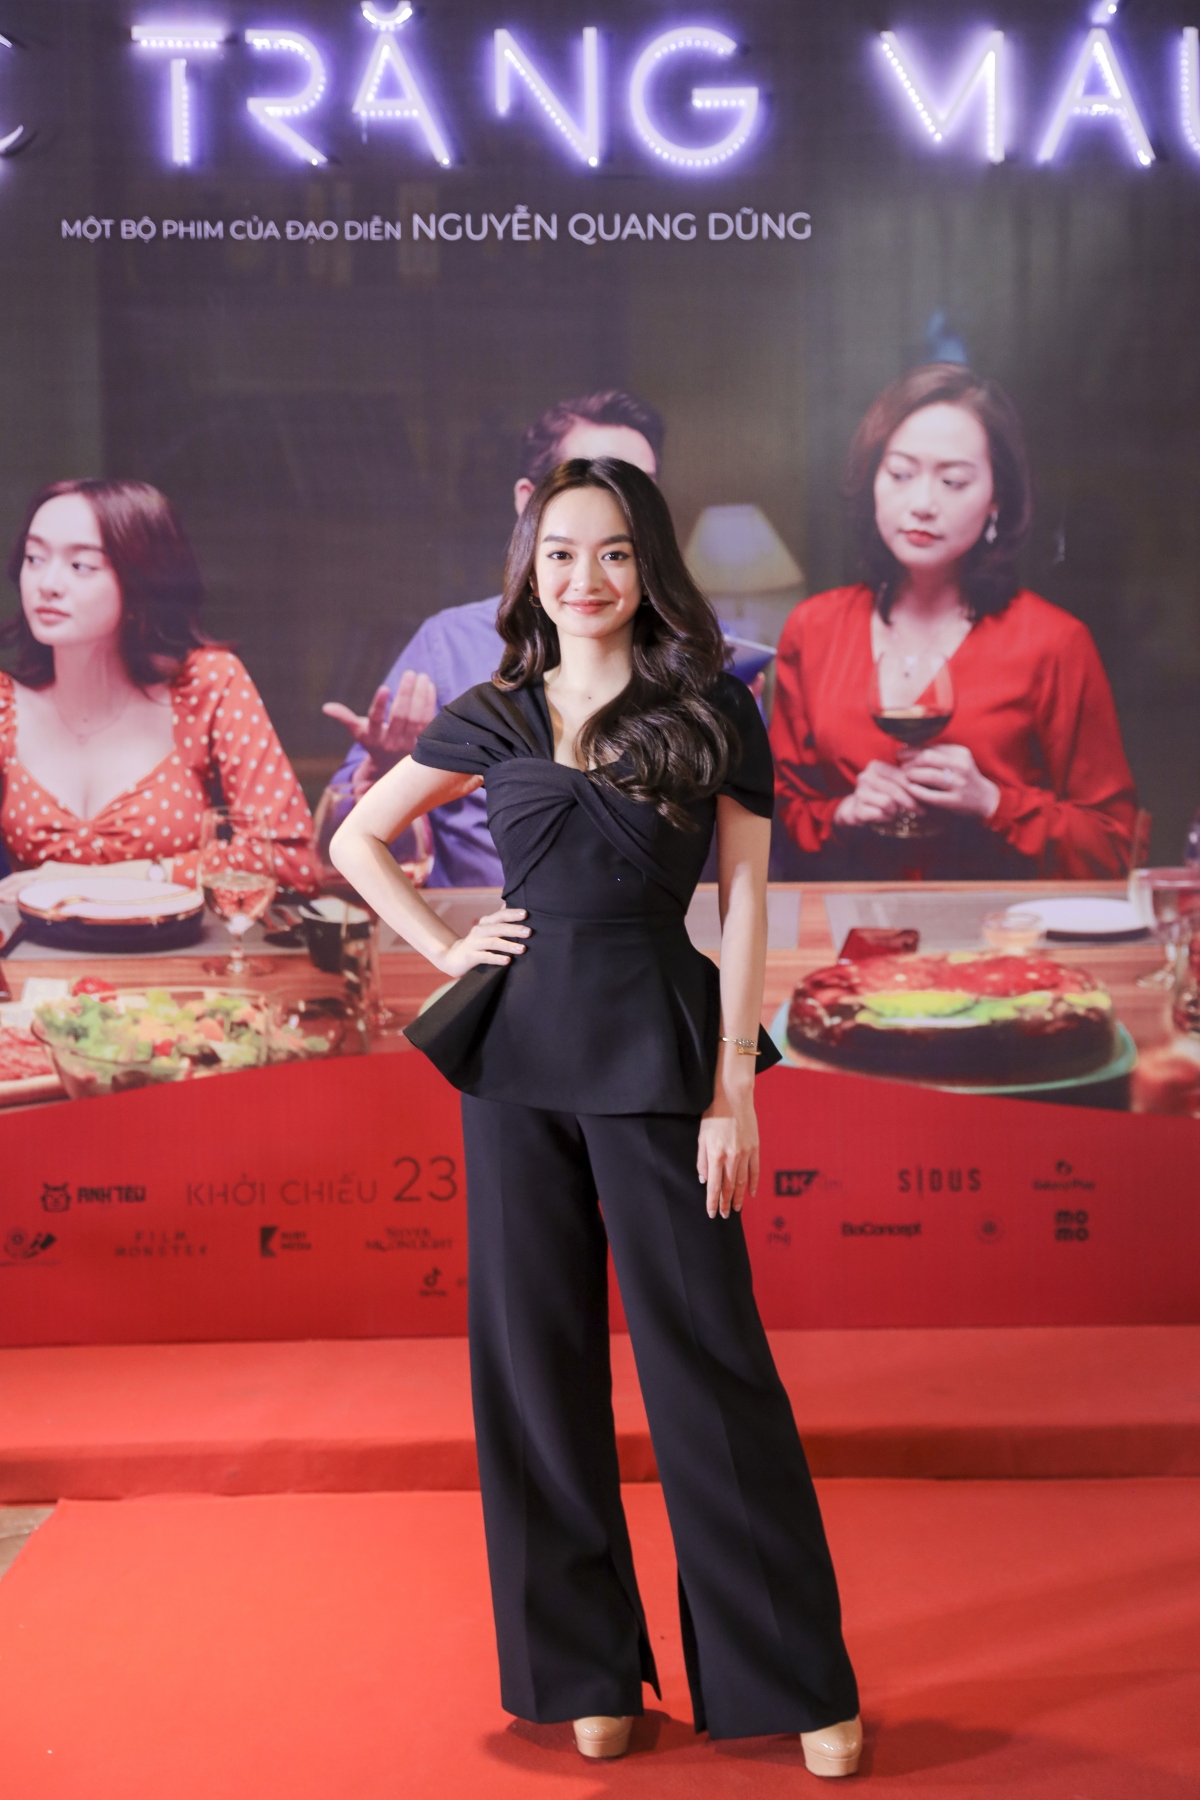 Kaity Nguyễn rạng rỡ trong buổi công chiếu "Tiệc trăng máu" tại Hà Nội.